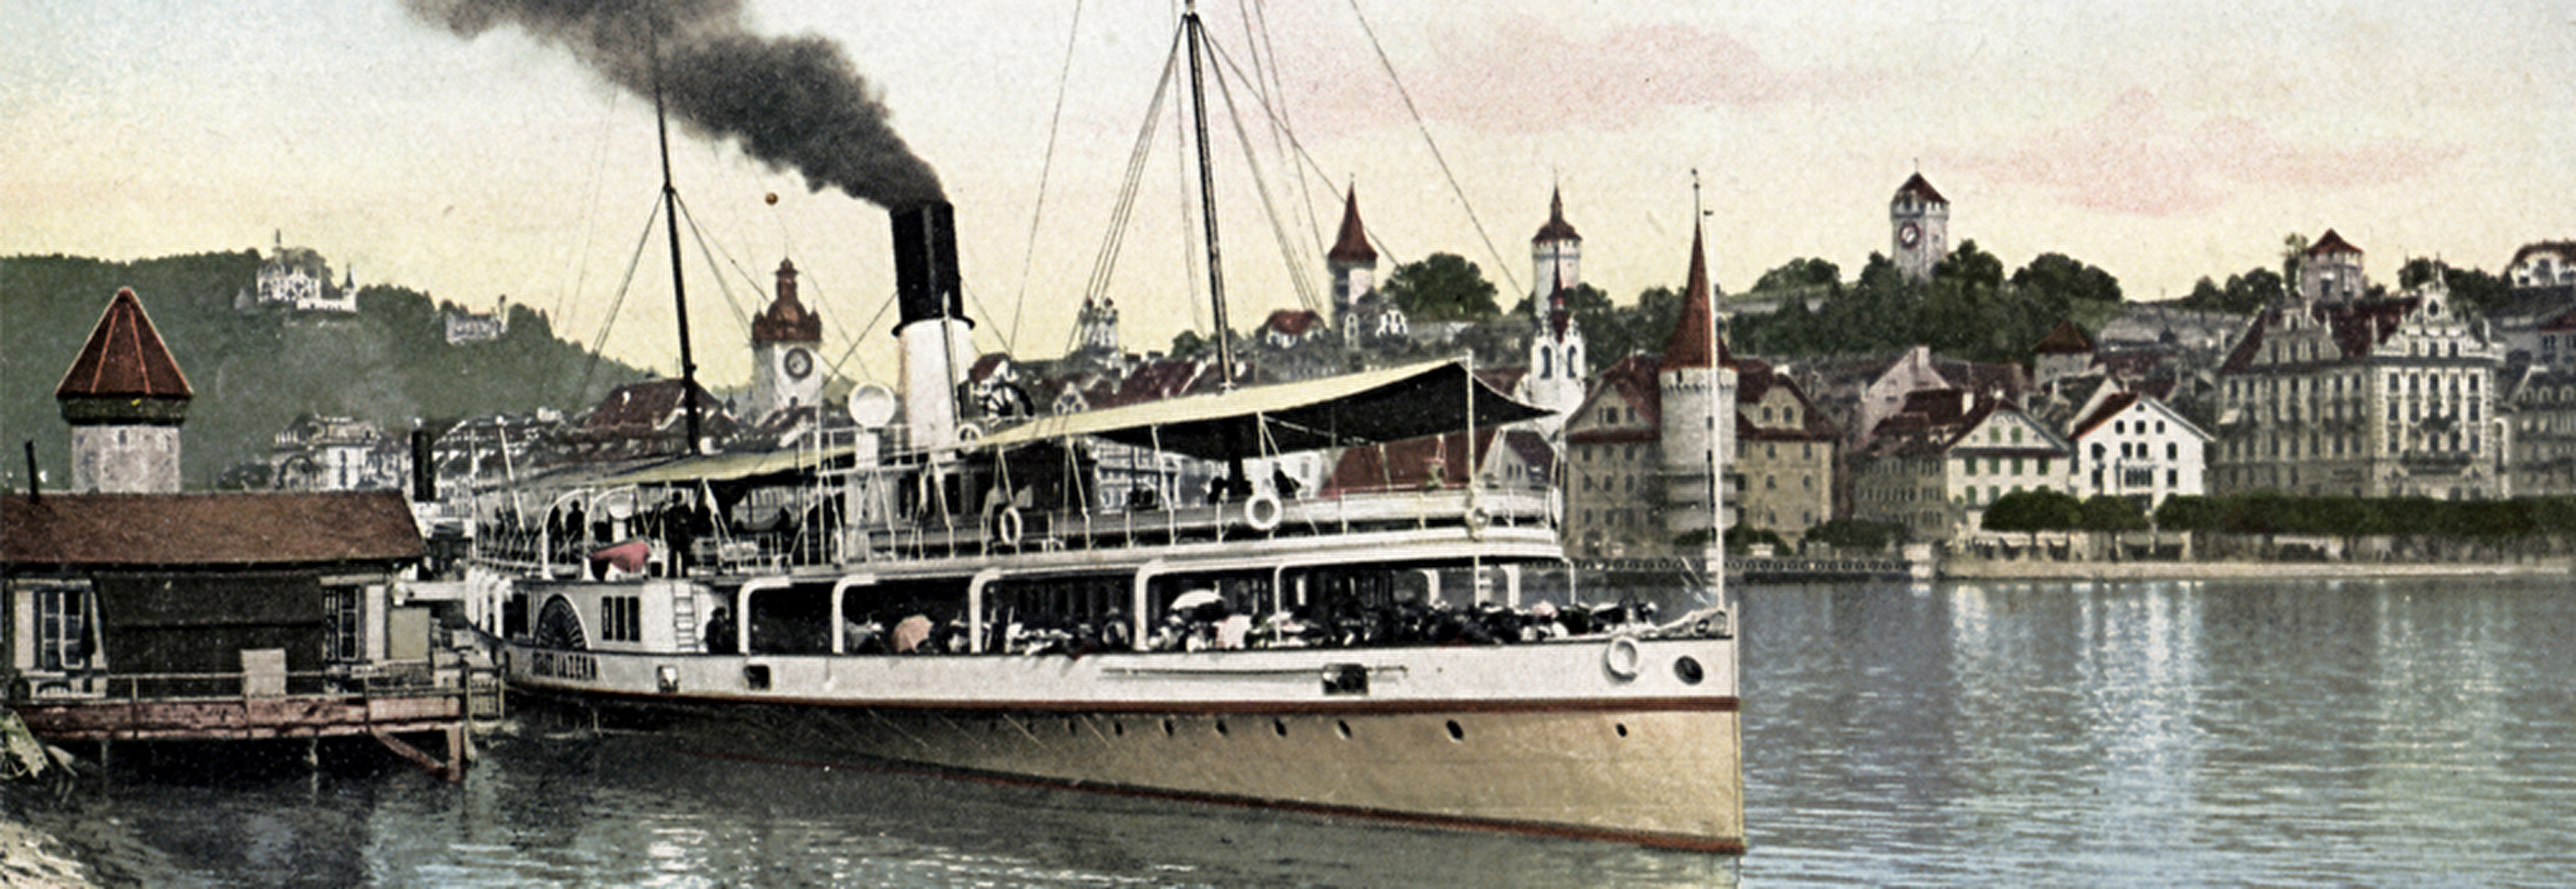 Dampfschiff Stadt Luzern am Quai beim Bahnhof, nach 1900